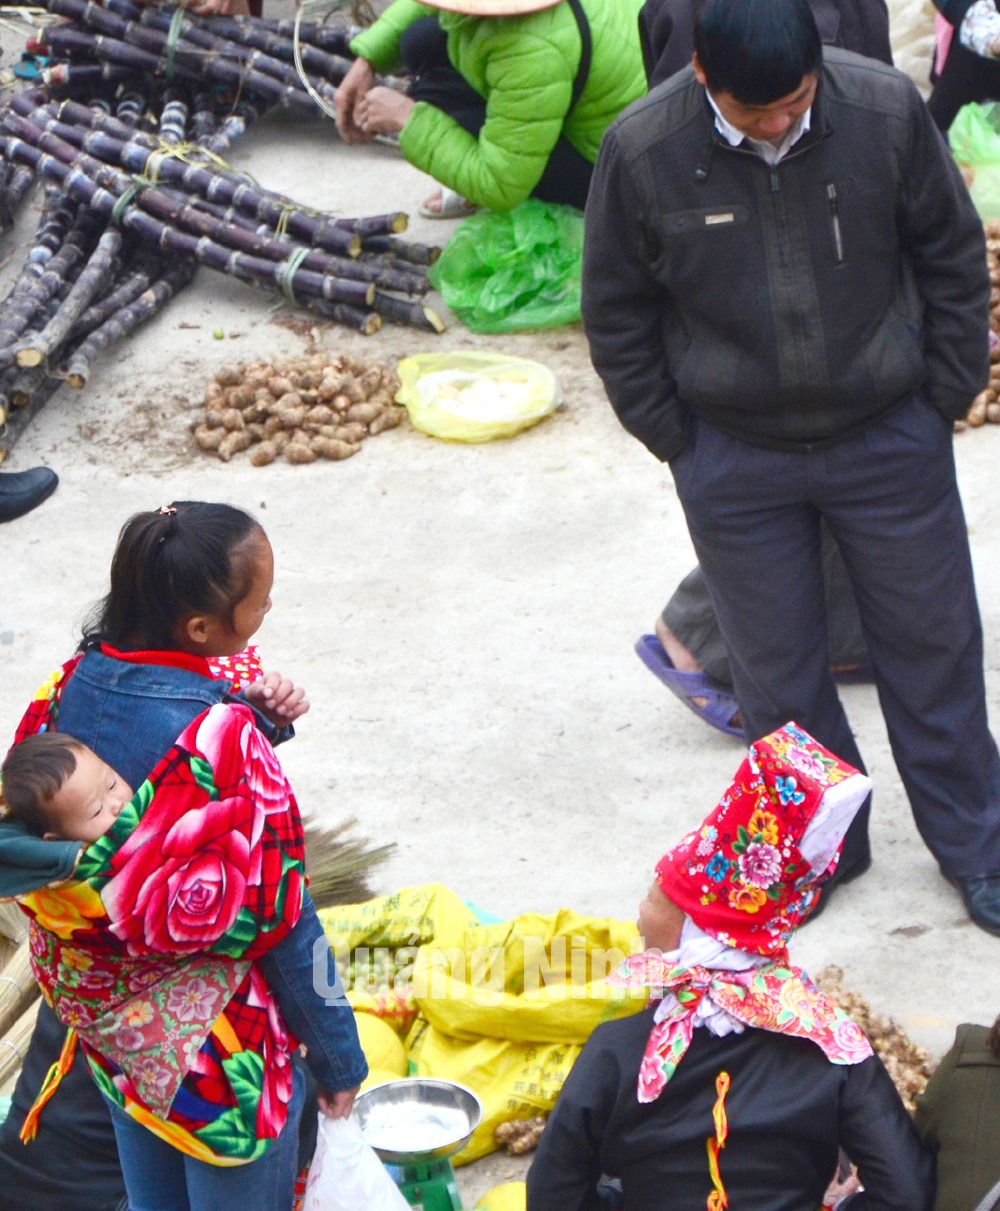 Em bé ngủ ngon trên lưng mẹ giữa phiên chợ náo nhiệt là hình ảnh dễ bắt gặp ở các chợ phiên vùng cao Bình Liêu.